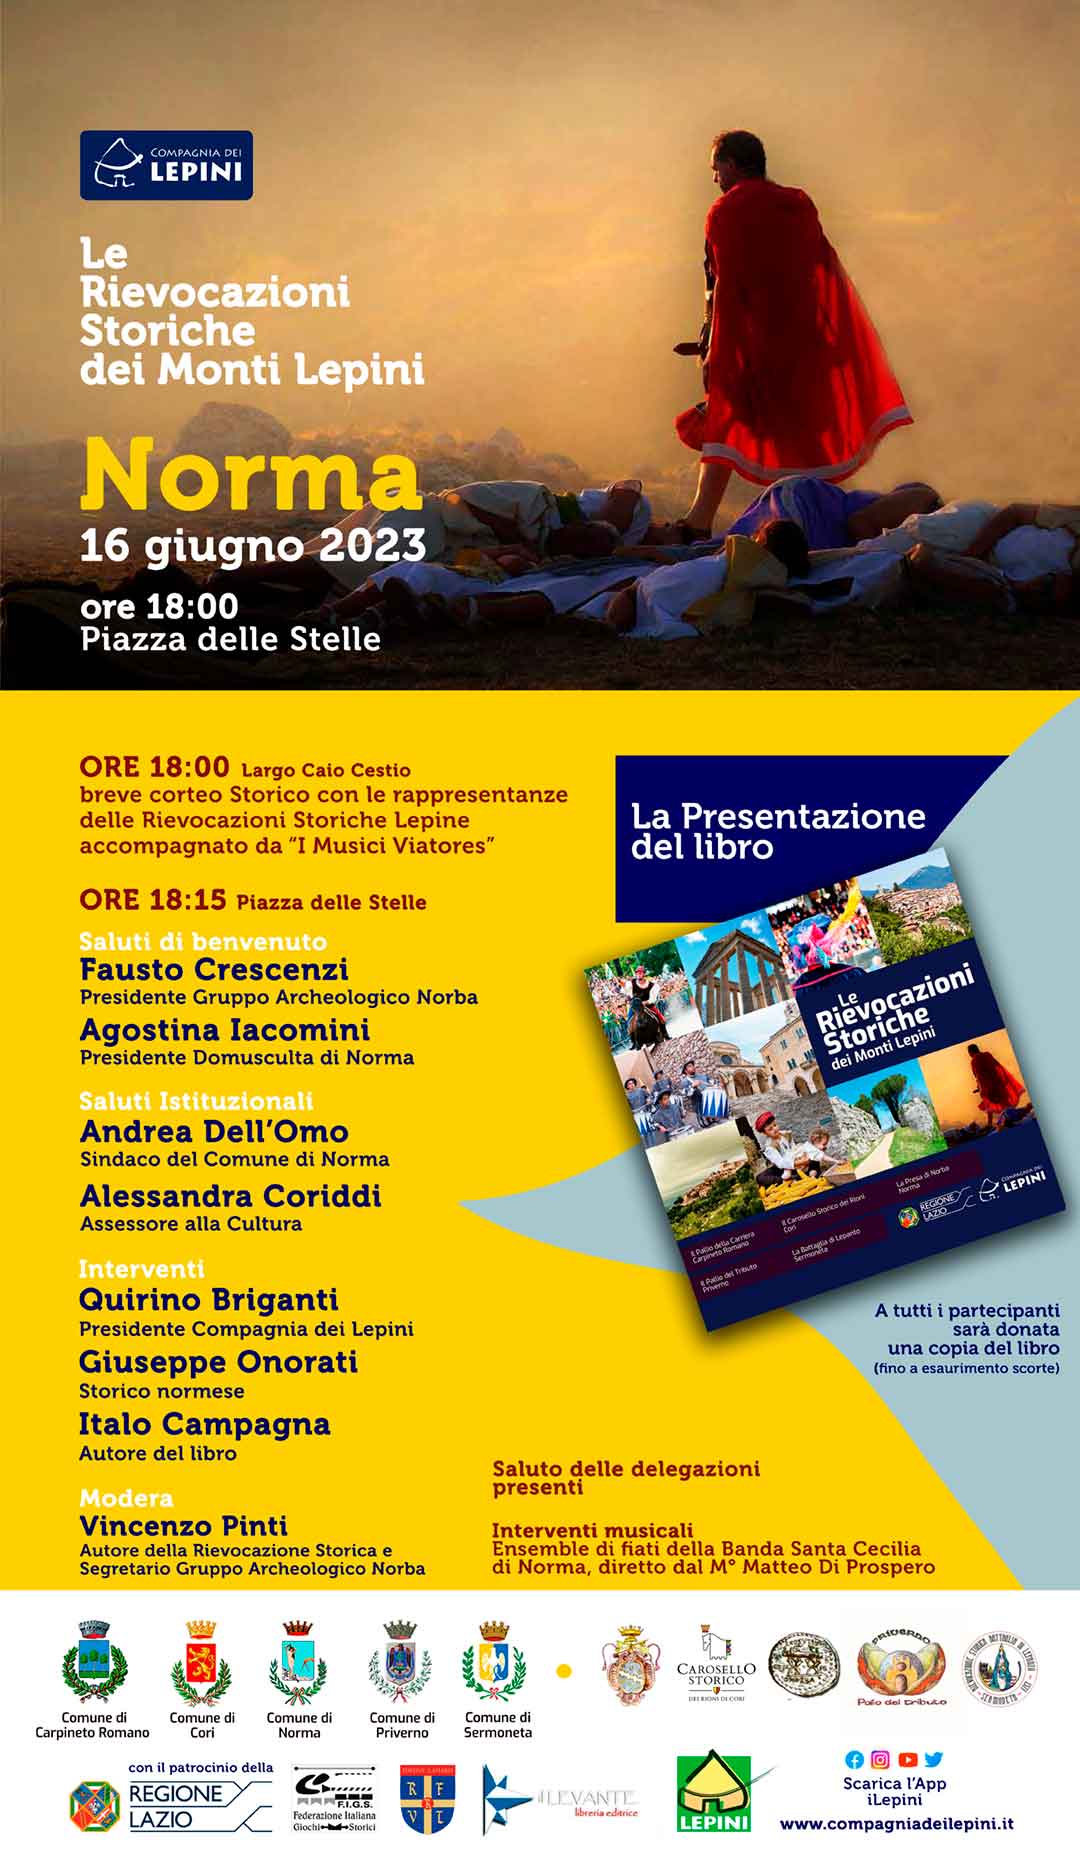 Le Rievocazioni Storiche dei Monti Lepini: Norma - Presentazione del libro @ Norma